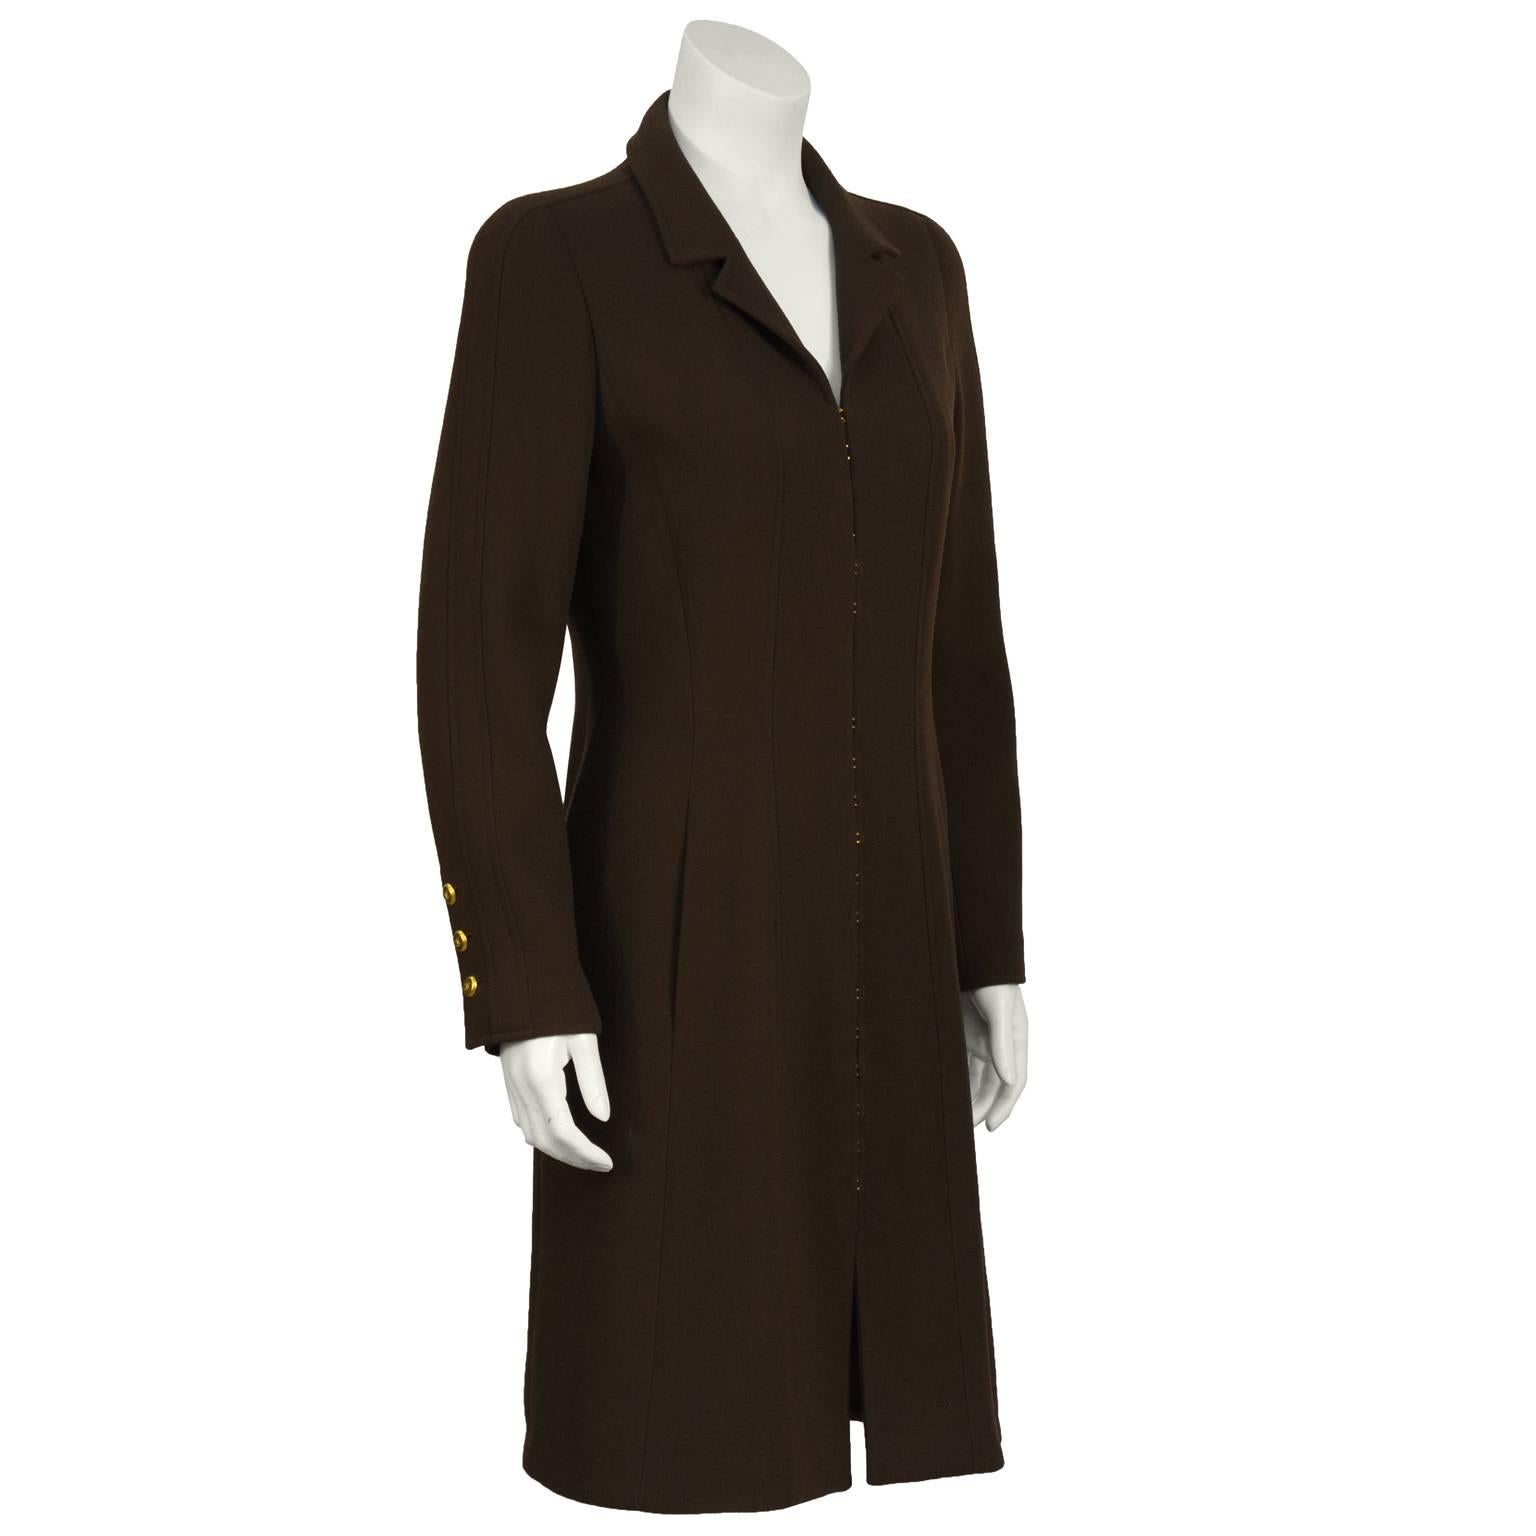 Robe manteau en crêpe de laine marron Chanel automne 1996 avec crochet multiple en or  à l'avant. Le manteau présente un petit col cranté et des coutures sur le devant avec des poches à l'entrejambe. Les poignets ont des boutons cc dorés. En parfait